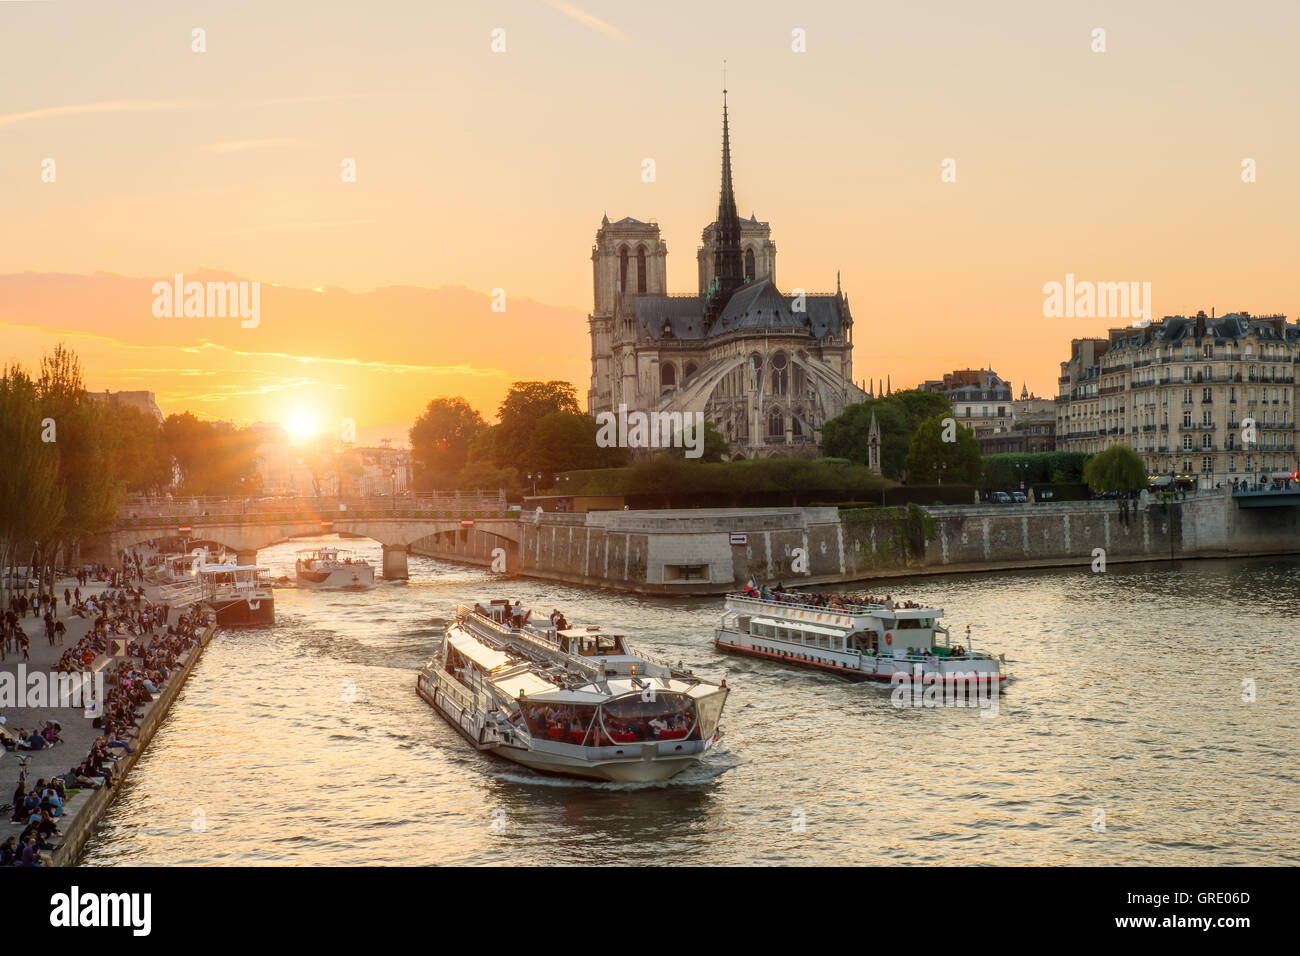 Notre Dame de Paris cathédrale avec bateau de croisière en Seine à Paris, France. Magnifique coucher de soleil à Paris, France Banque D'Images